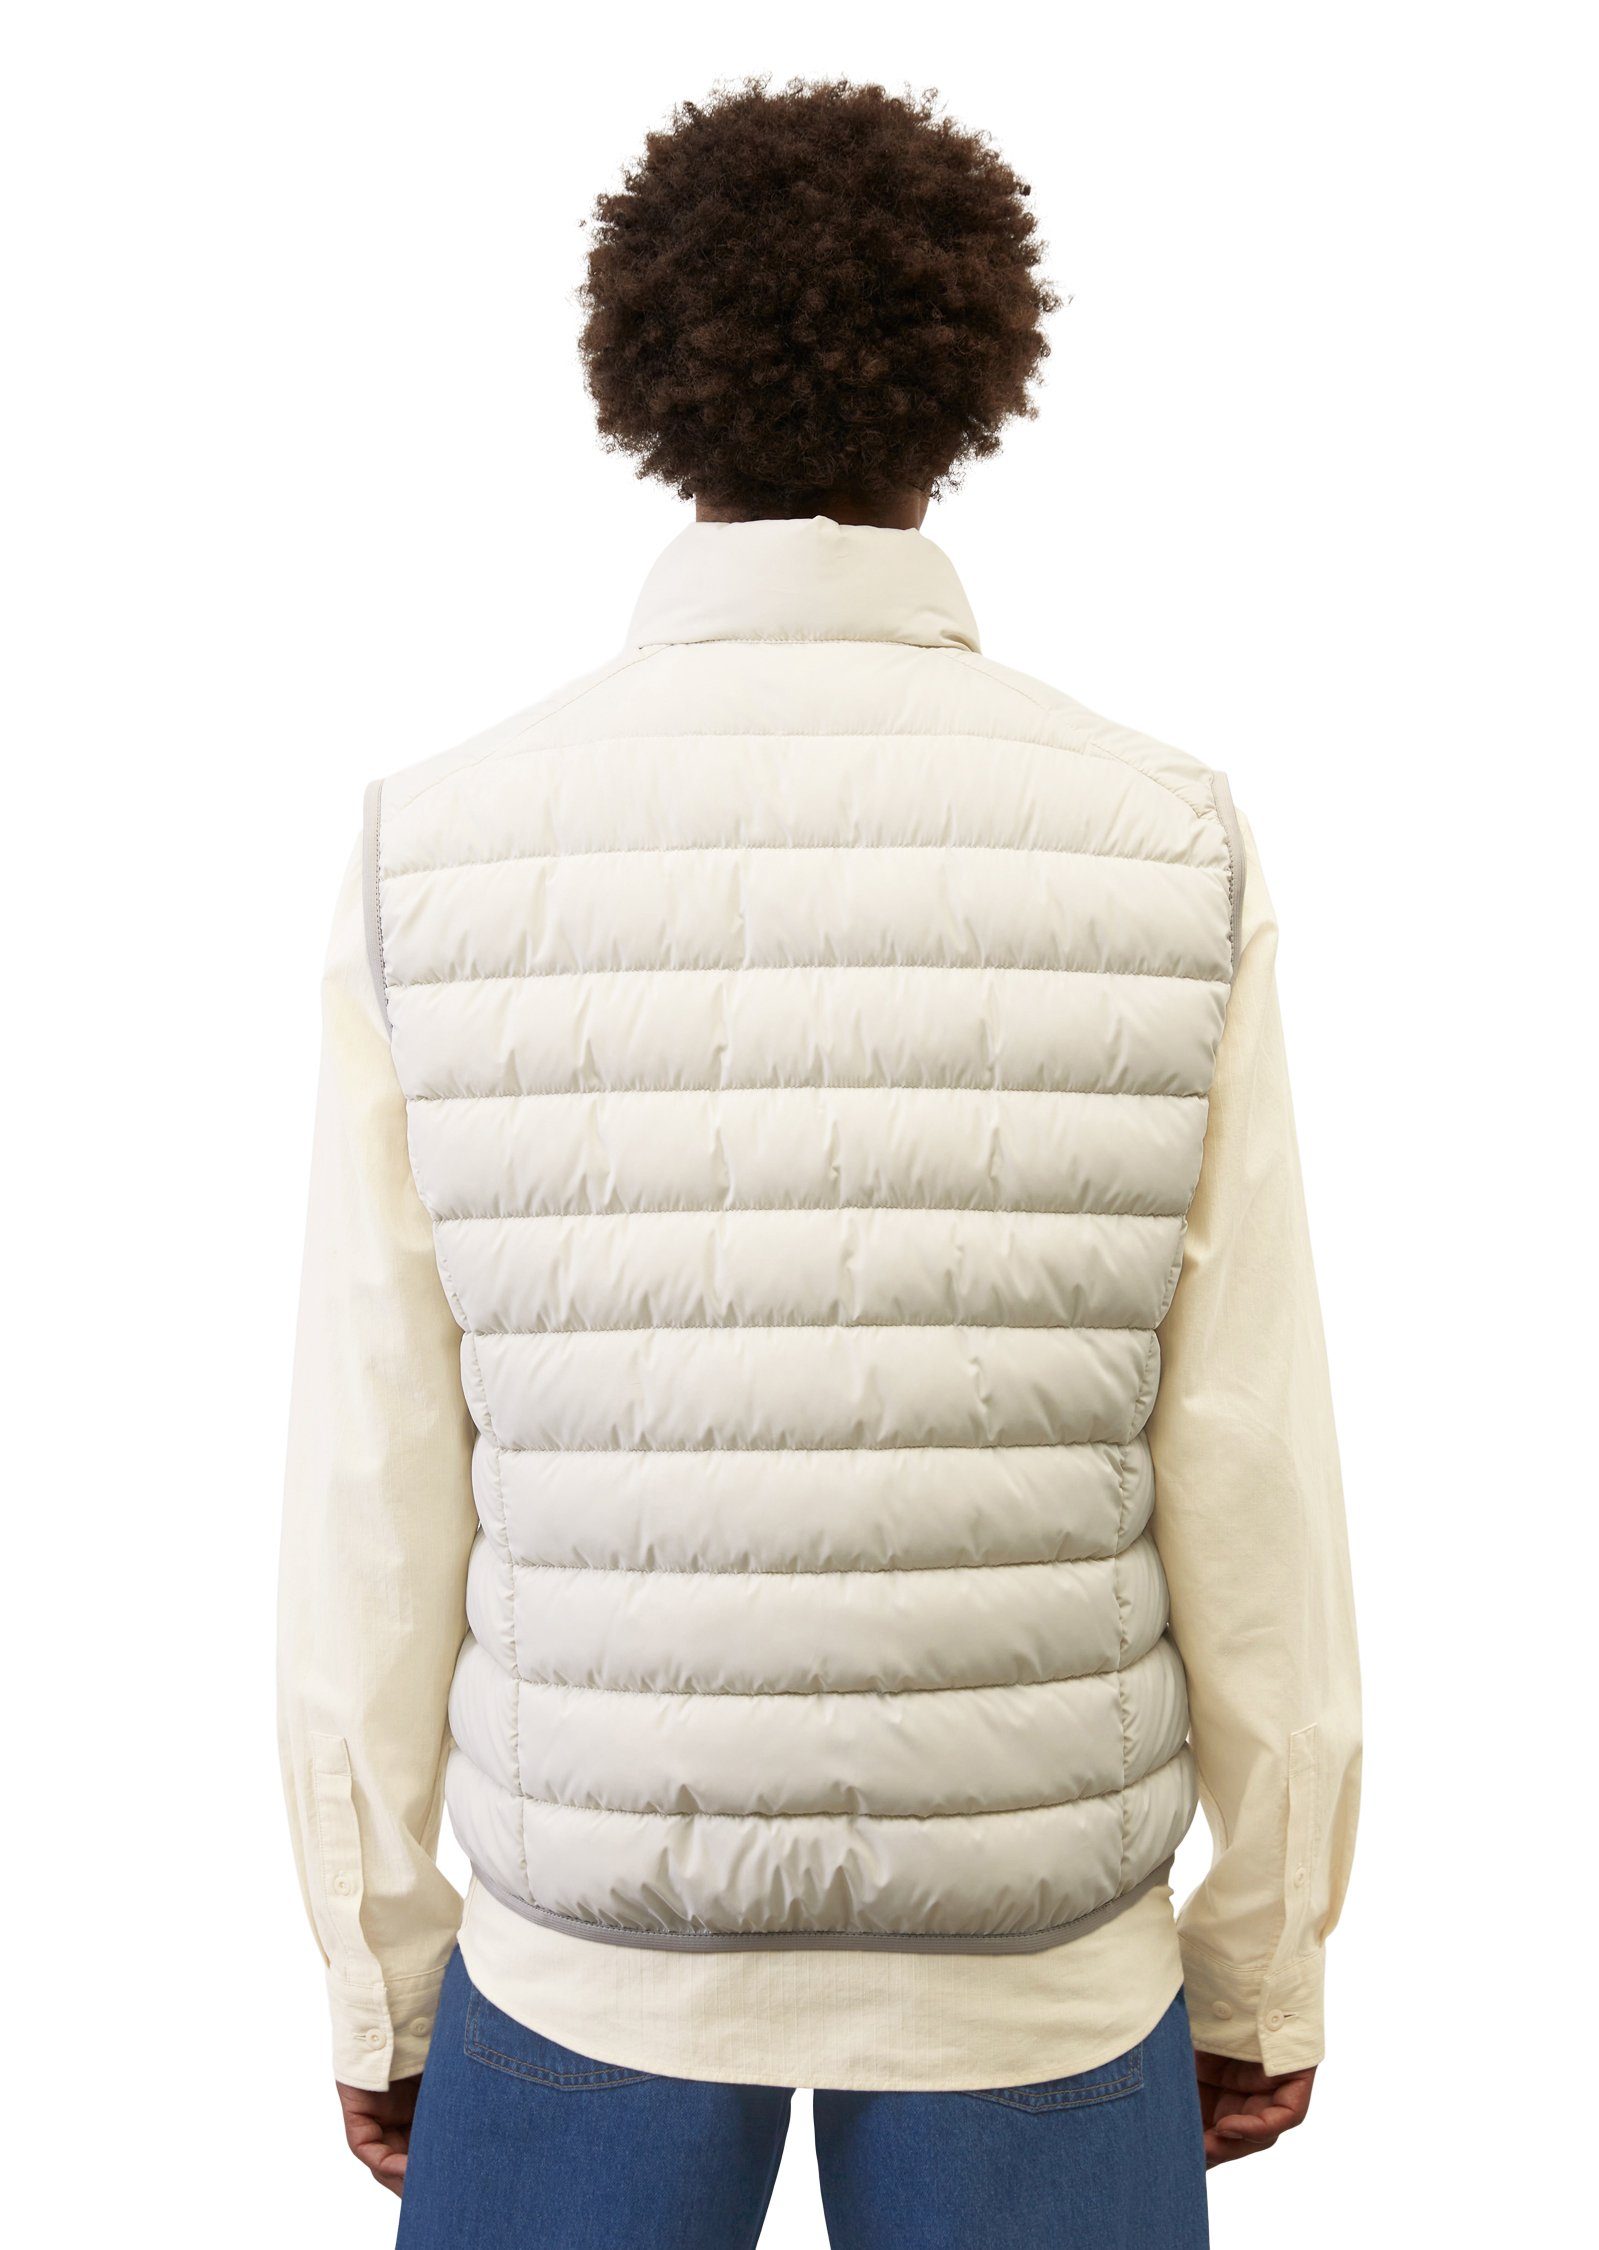 Oberfläche mit sdnd, white stand-up Marc O'Polo linen wasserabweisender collar Steppweste Vest,